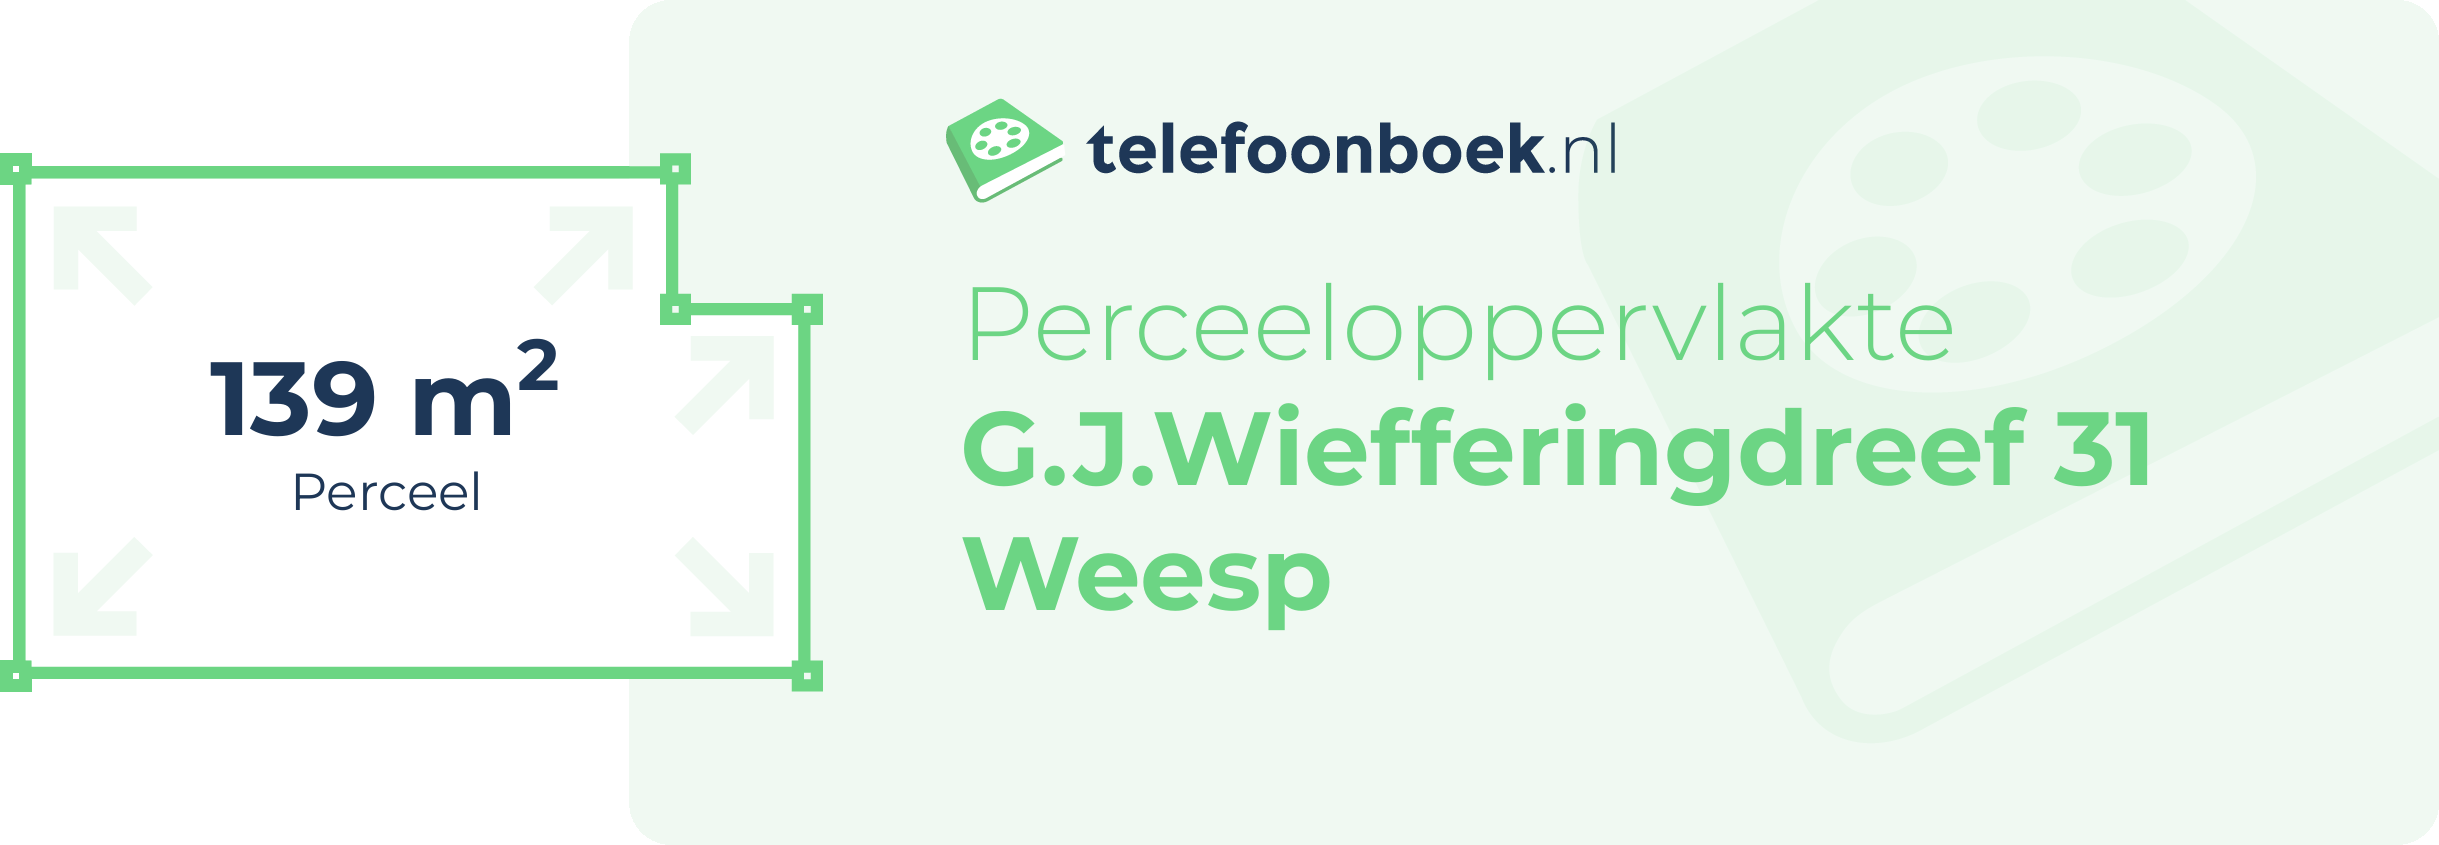 Perceeloppervlakte G.J.Wiefferingdreef 31 Weesp